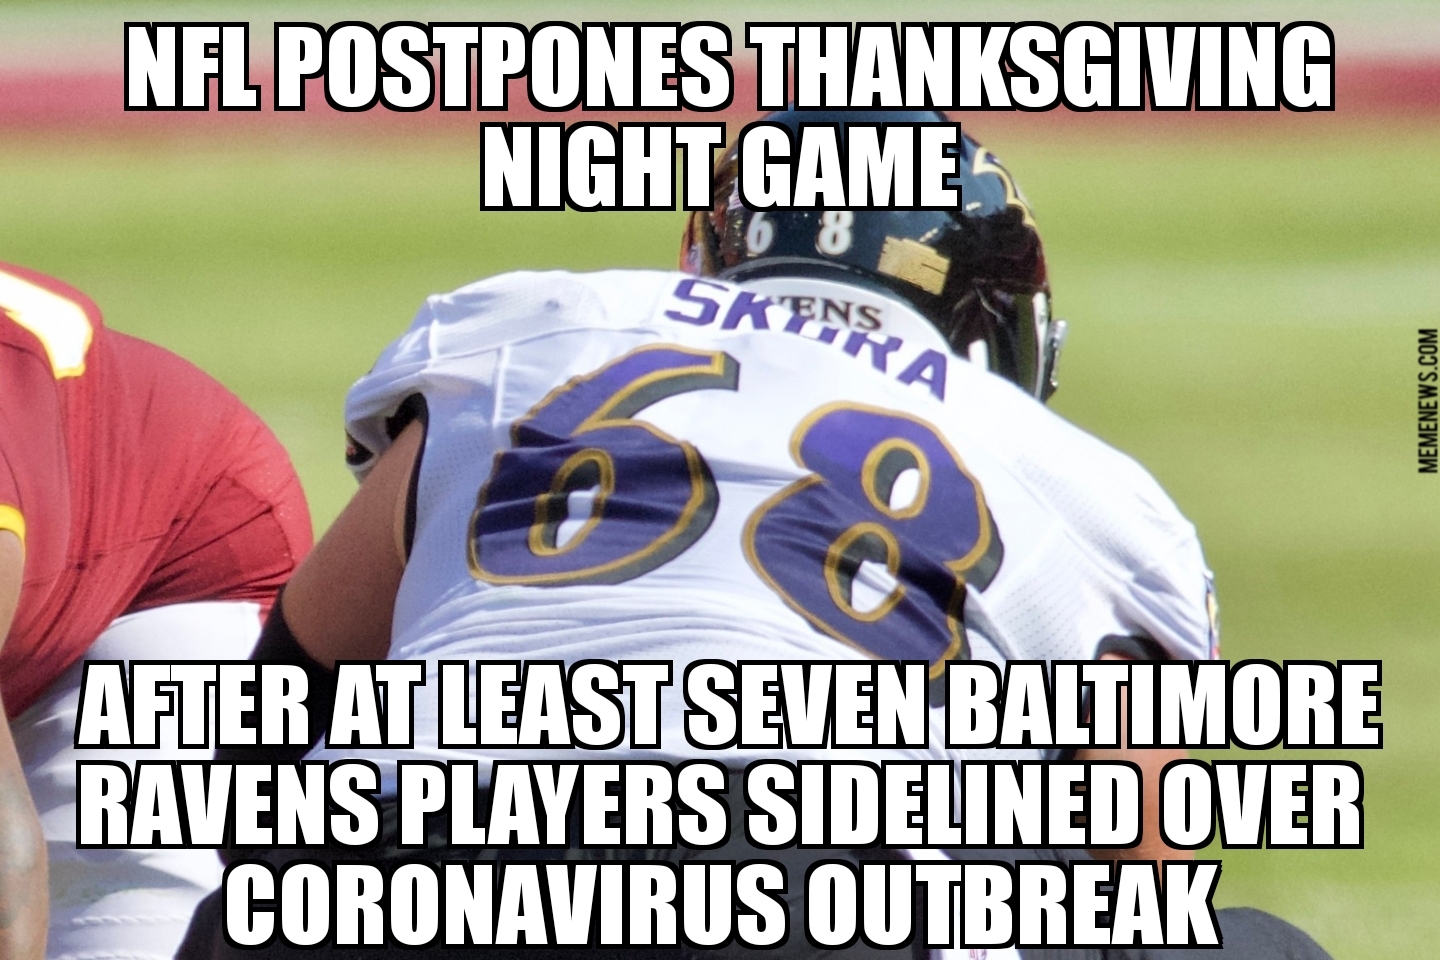 NFL postpones Thanksgiving game over coronavirus